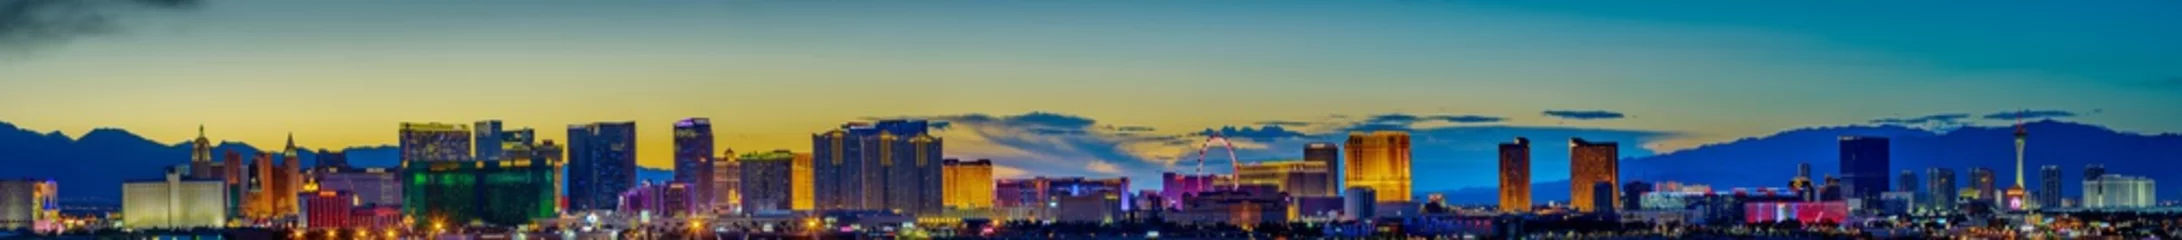 Foto auf Acrylglas Antireflex Skyline-Blick bei Sonnenuntergang des berühmten Las Vegas Strip in Weltklasse-Hotels und Casinos, NV © yooranpark